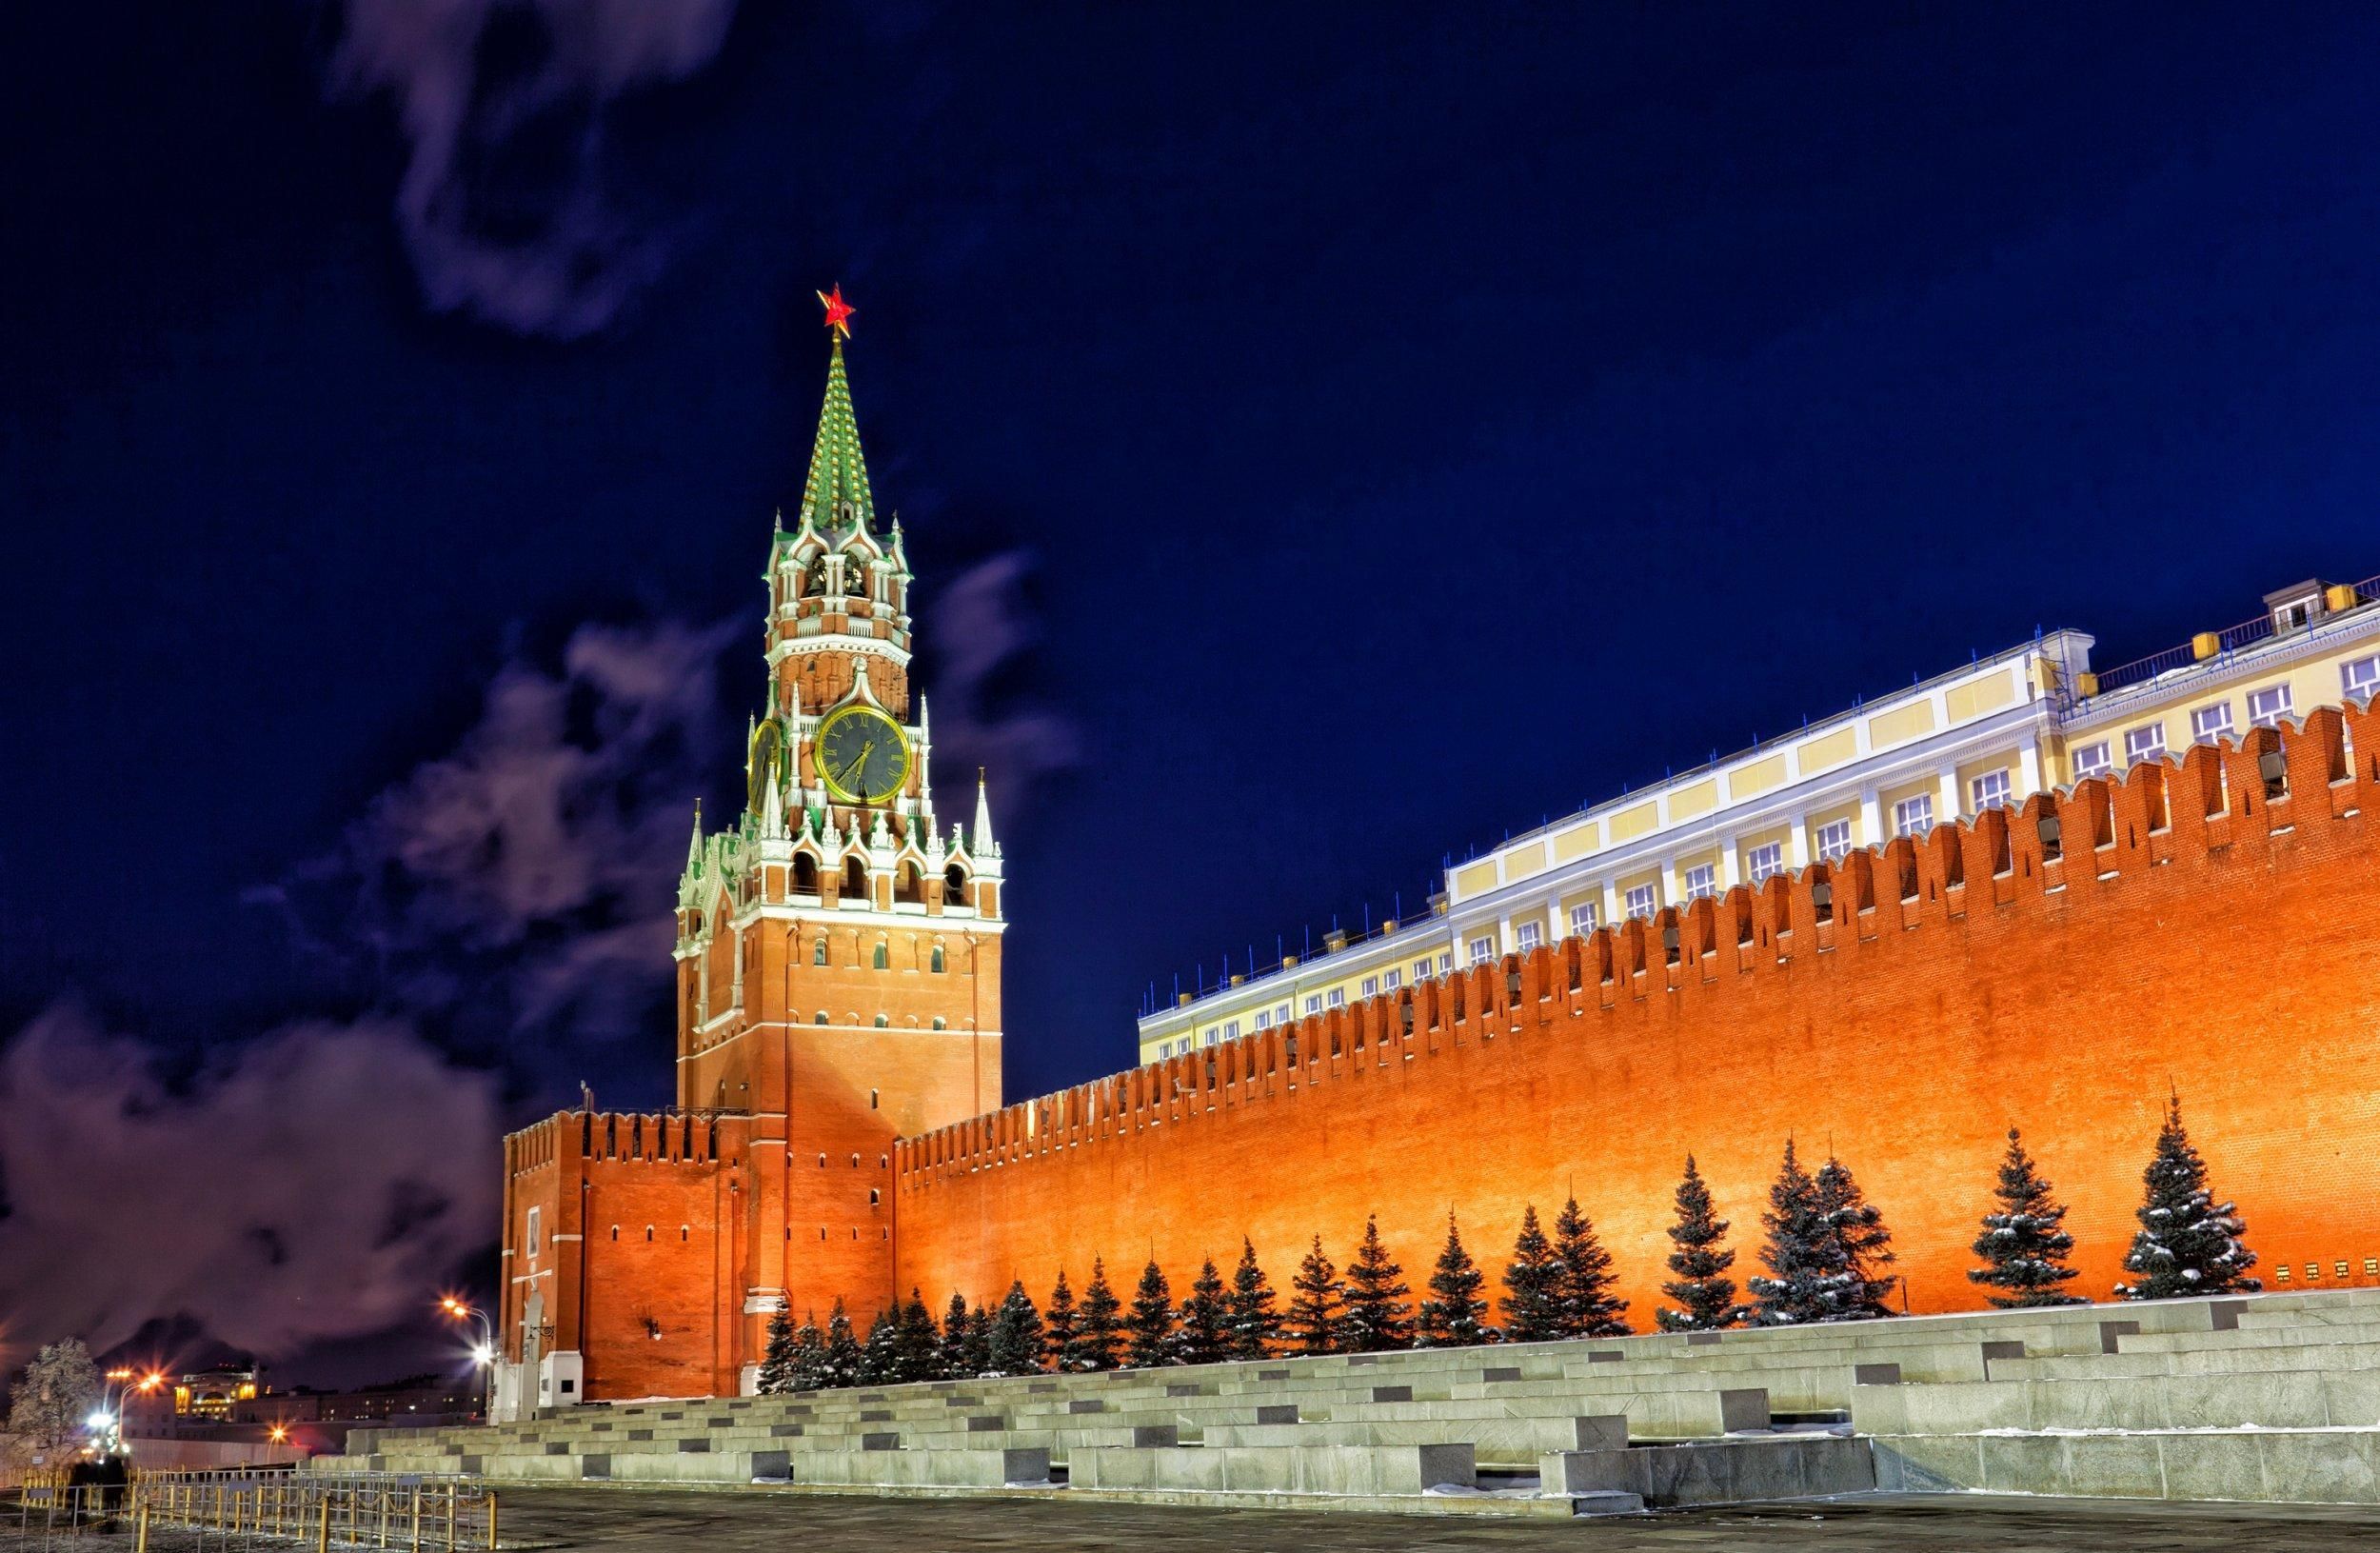 В Кремле совершил самоубийство Михаил Захаров: что известно